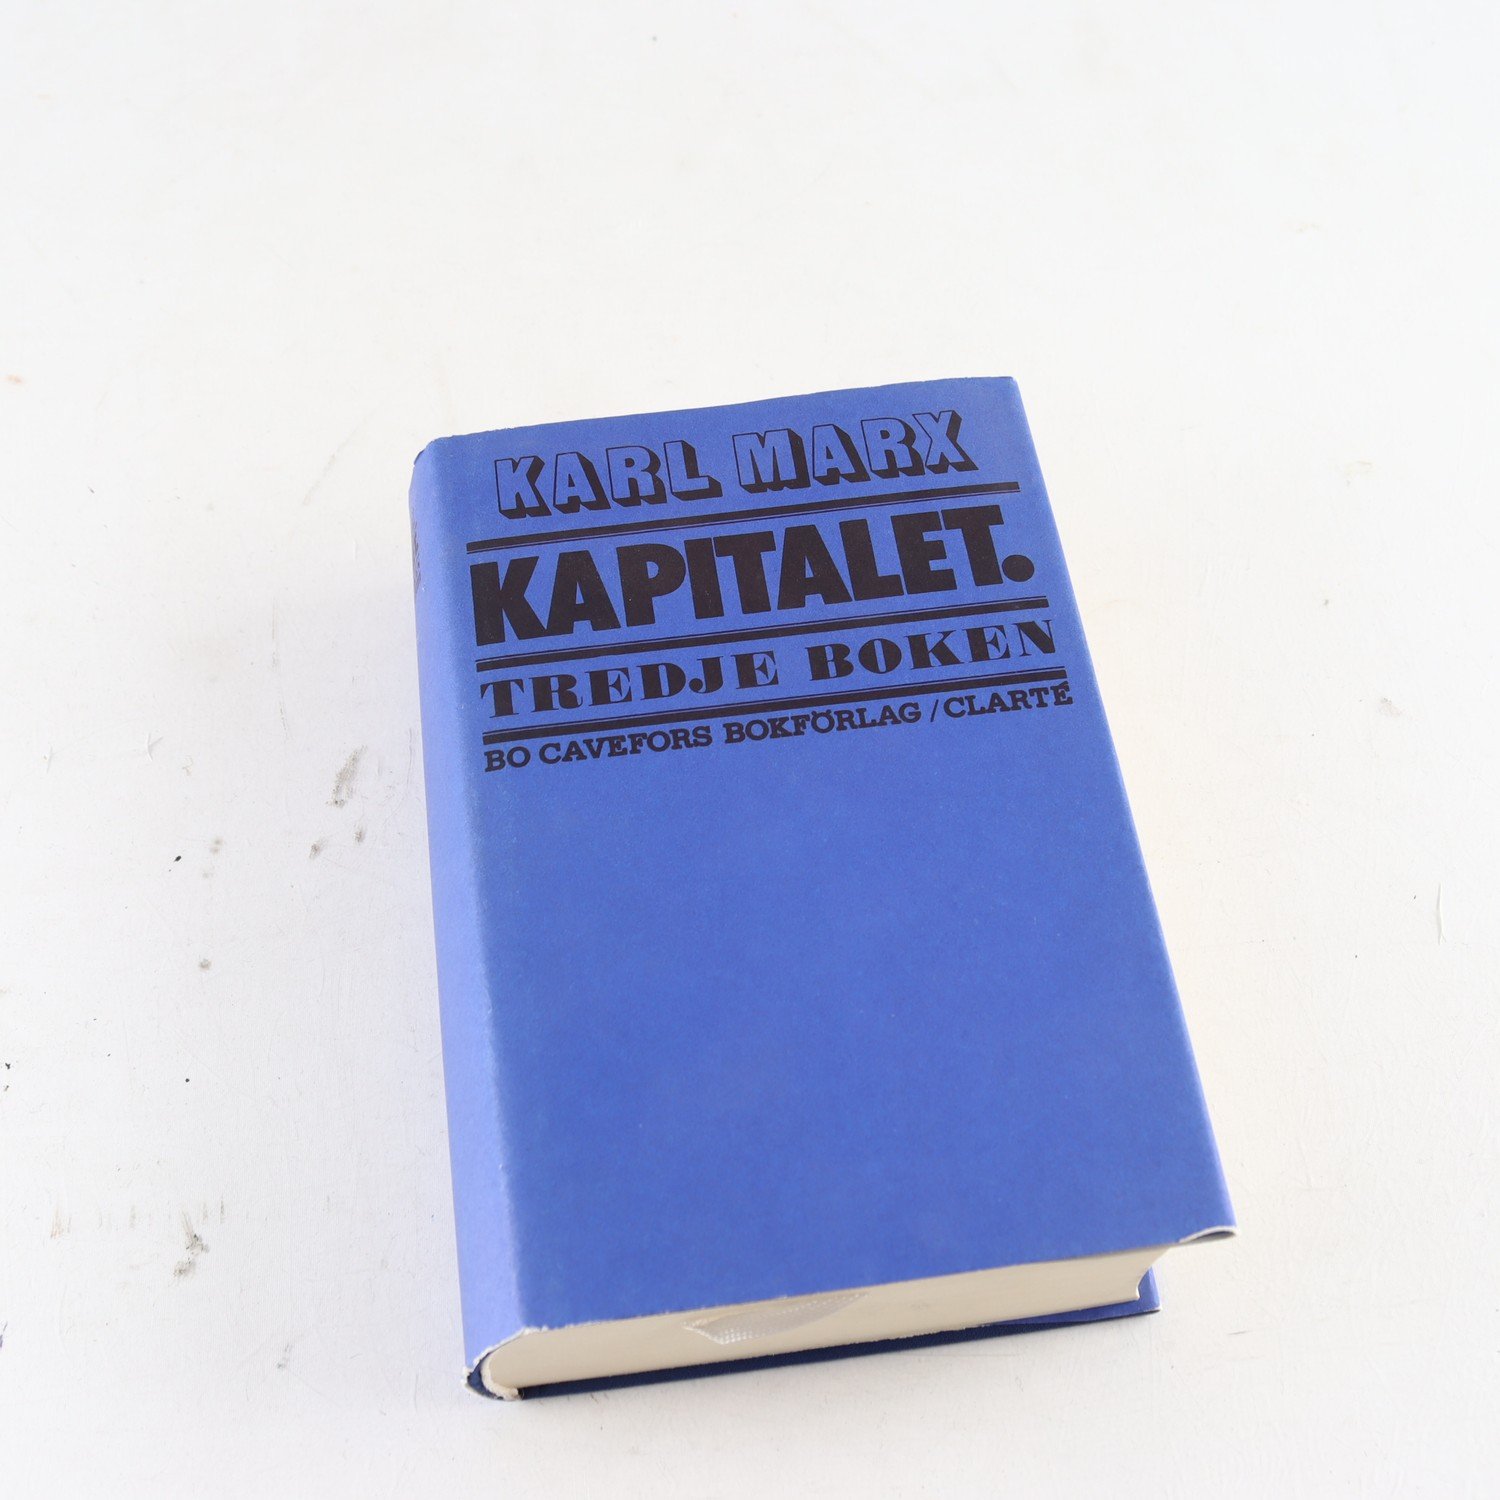 Karl Marx, Kapitalet, Tredje boken